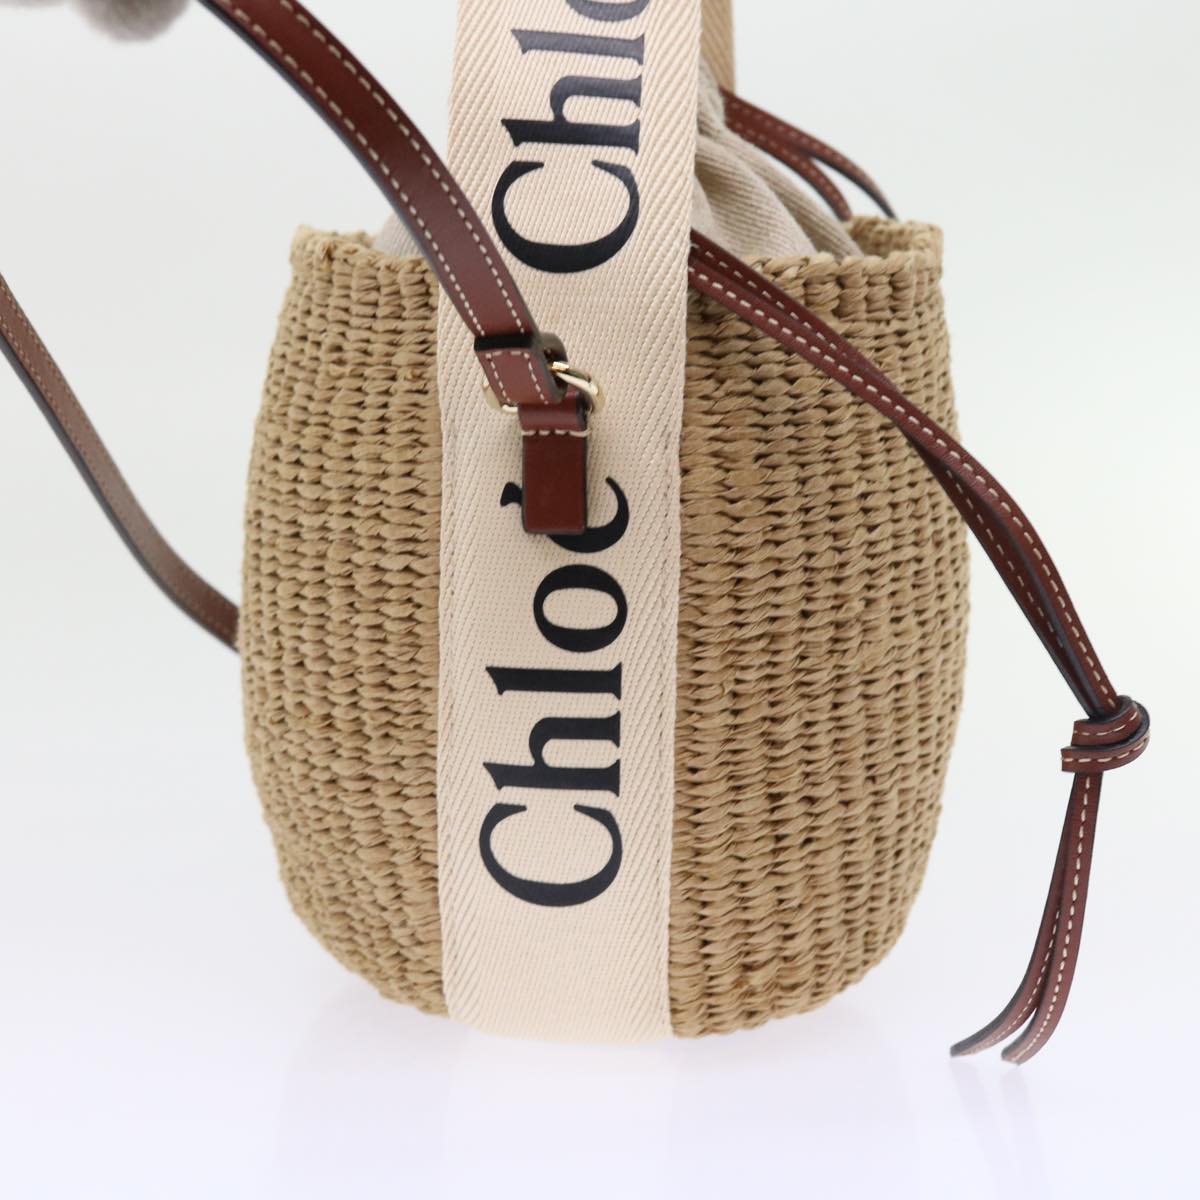 Chloe Small Woody Basket Shoulder Bag Straw Beige Auth am5021